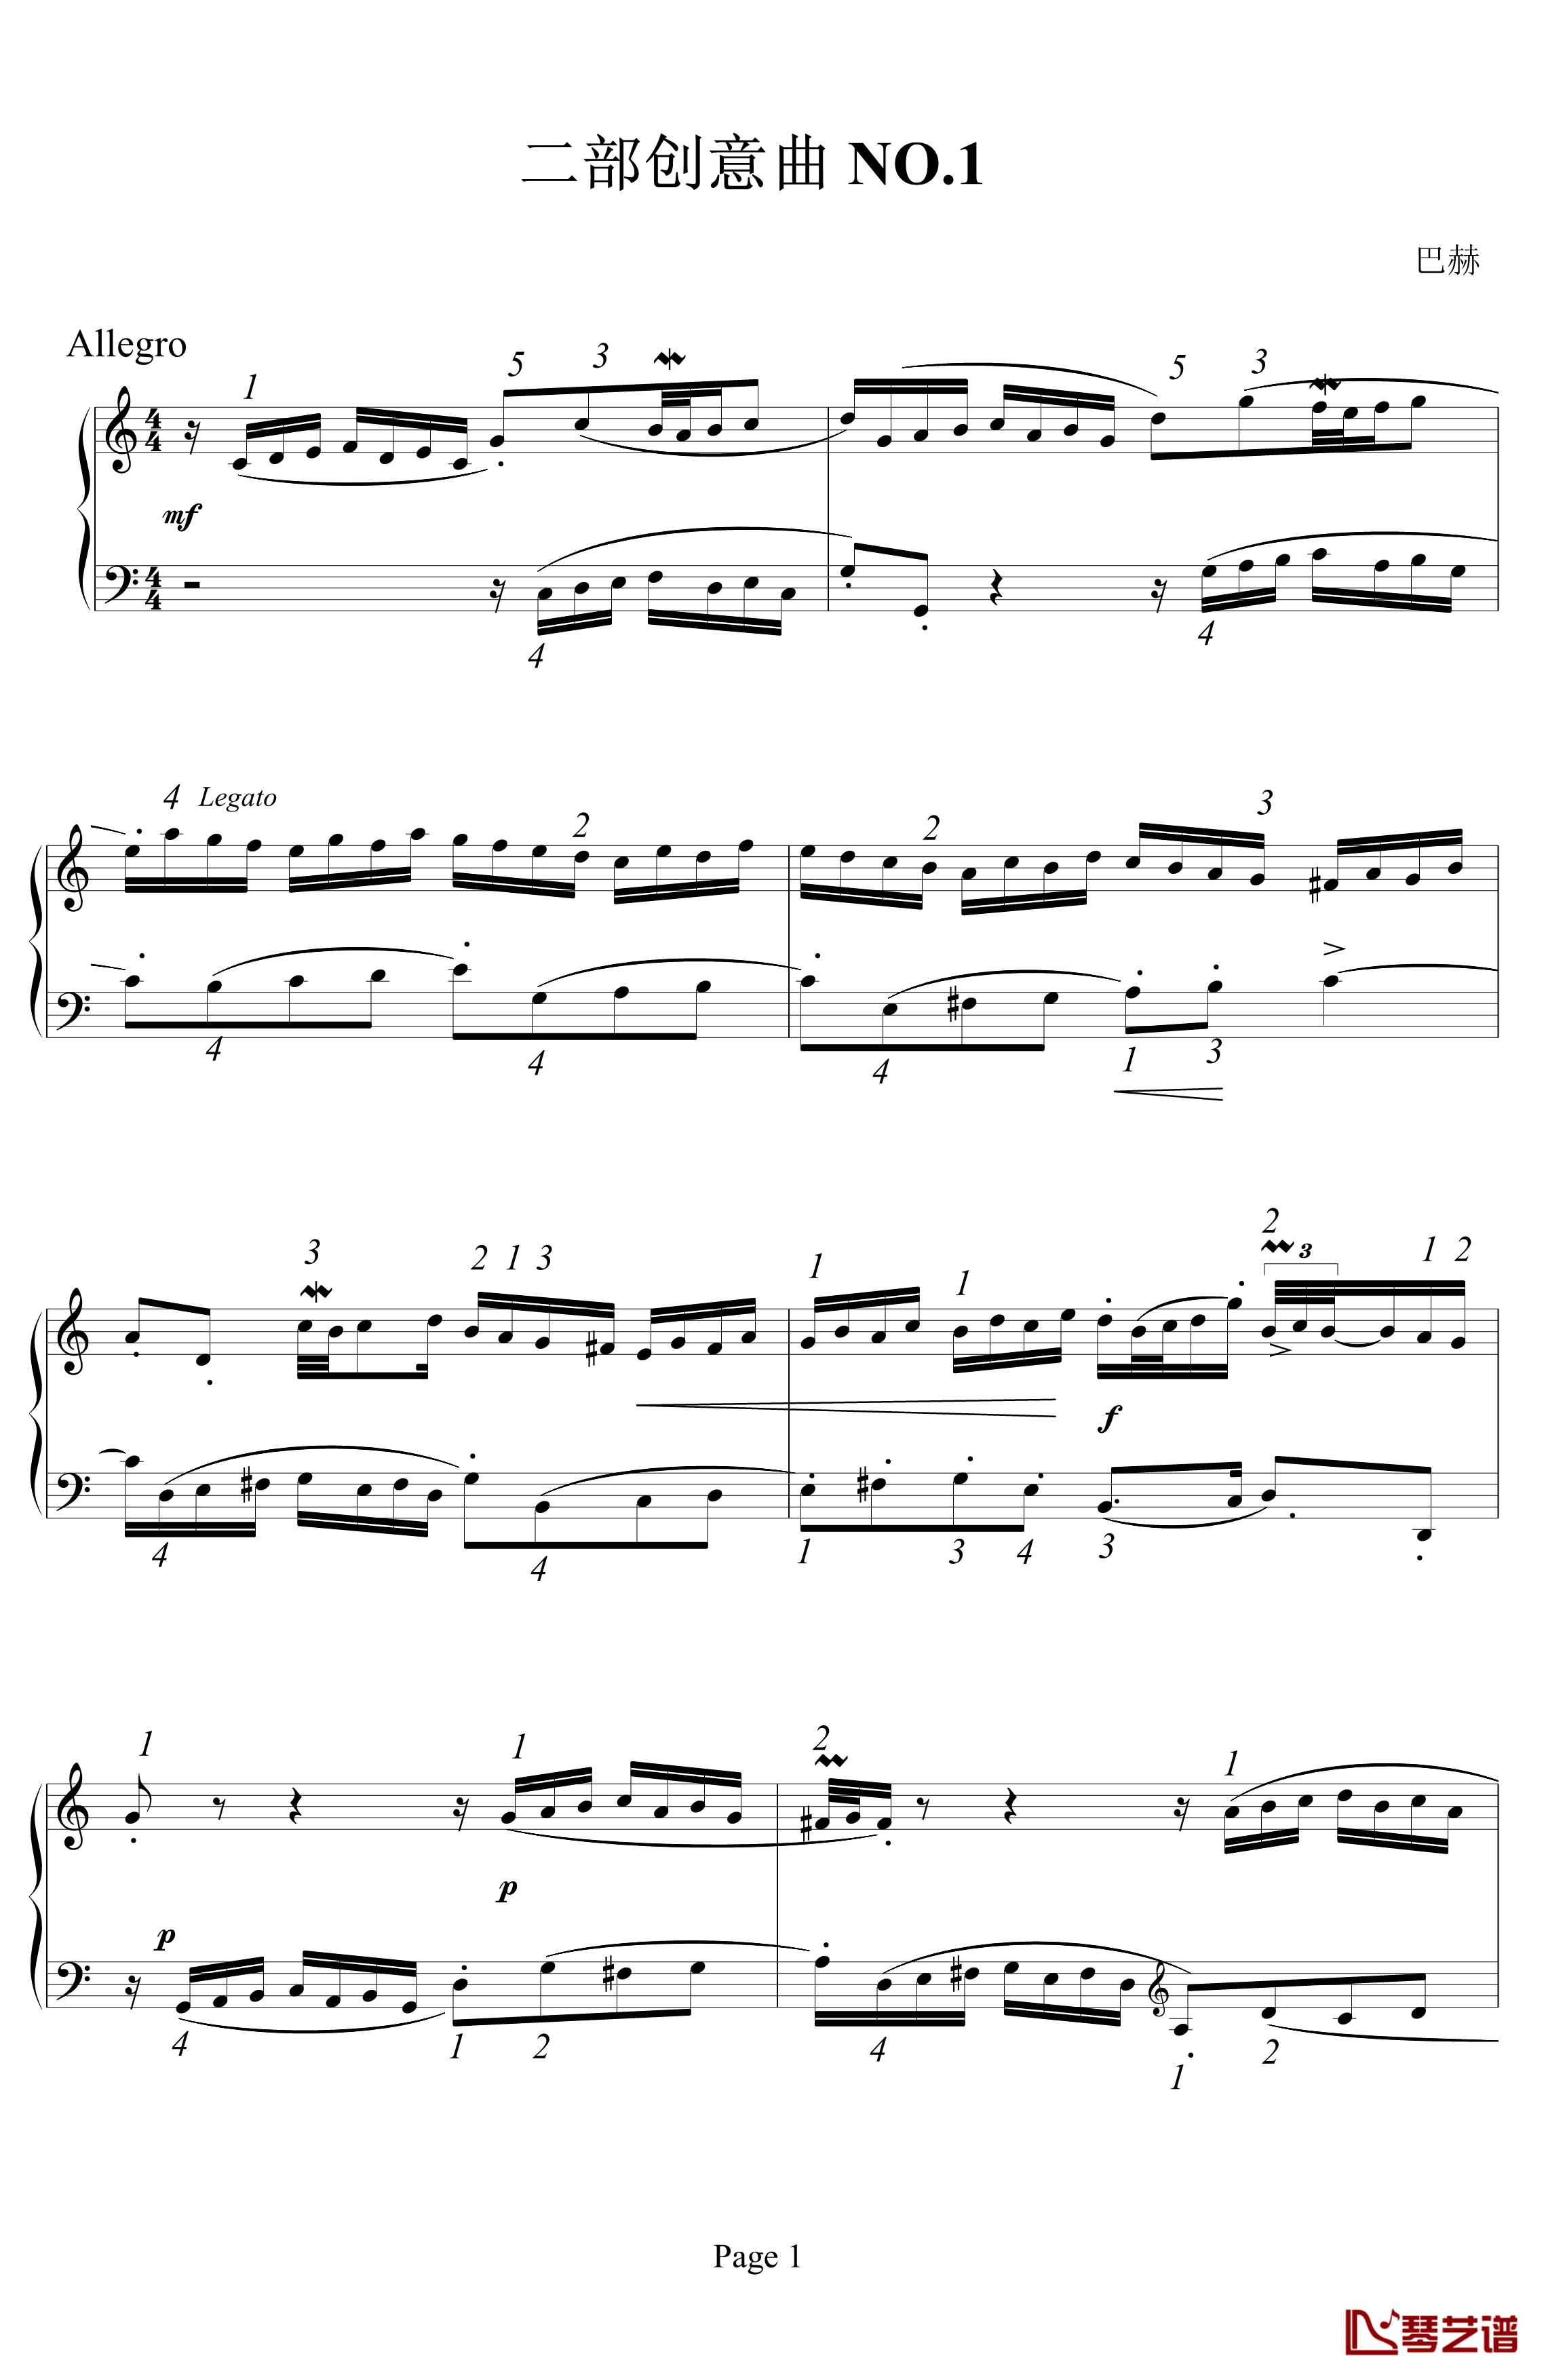 二部创意曲 NO.1钢琴谱-指法-巴赫-P.E.Bach1